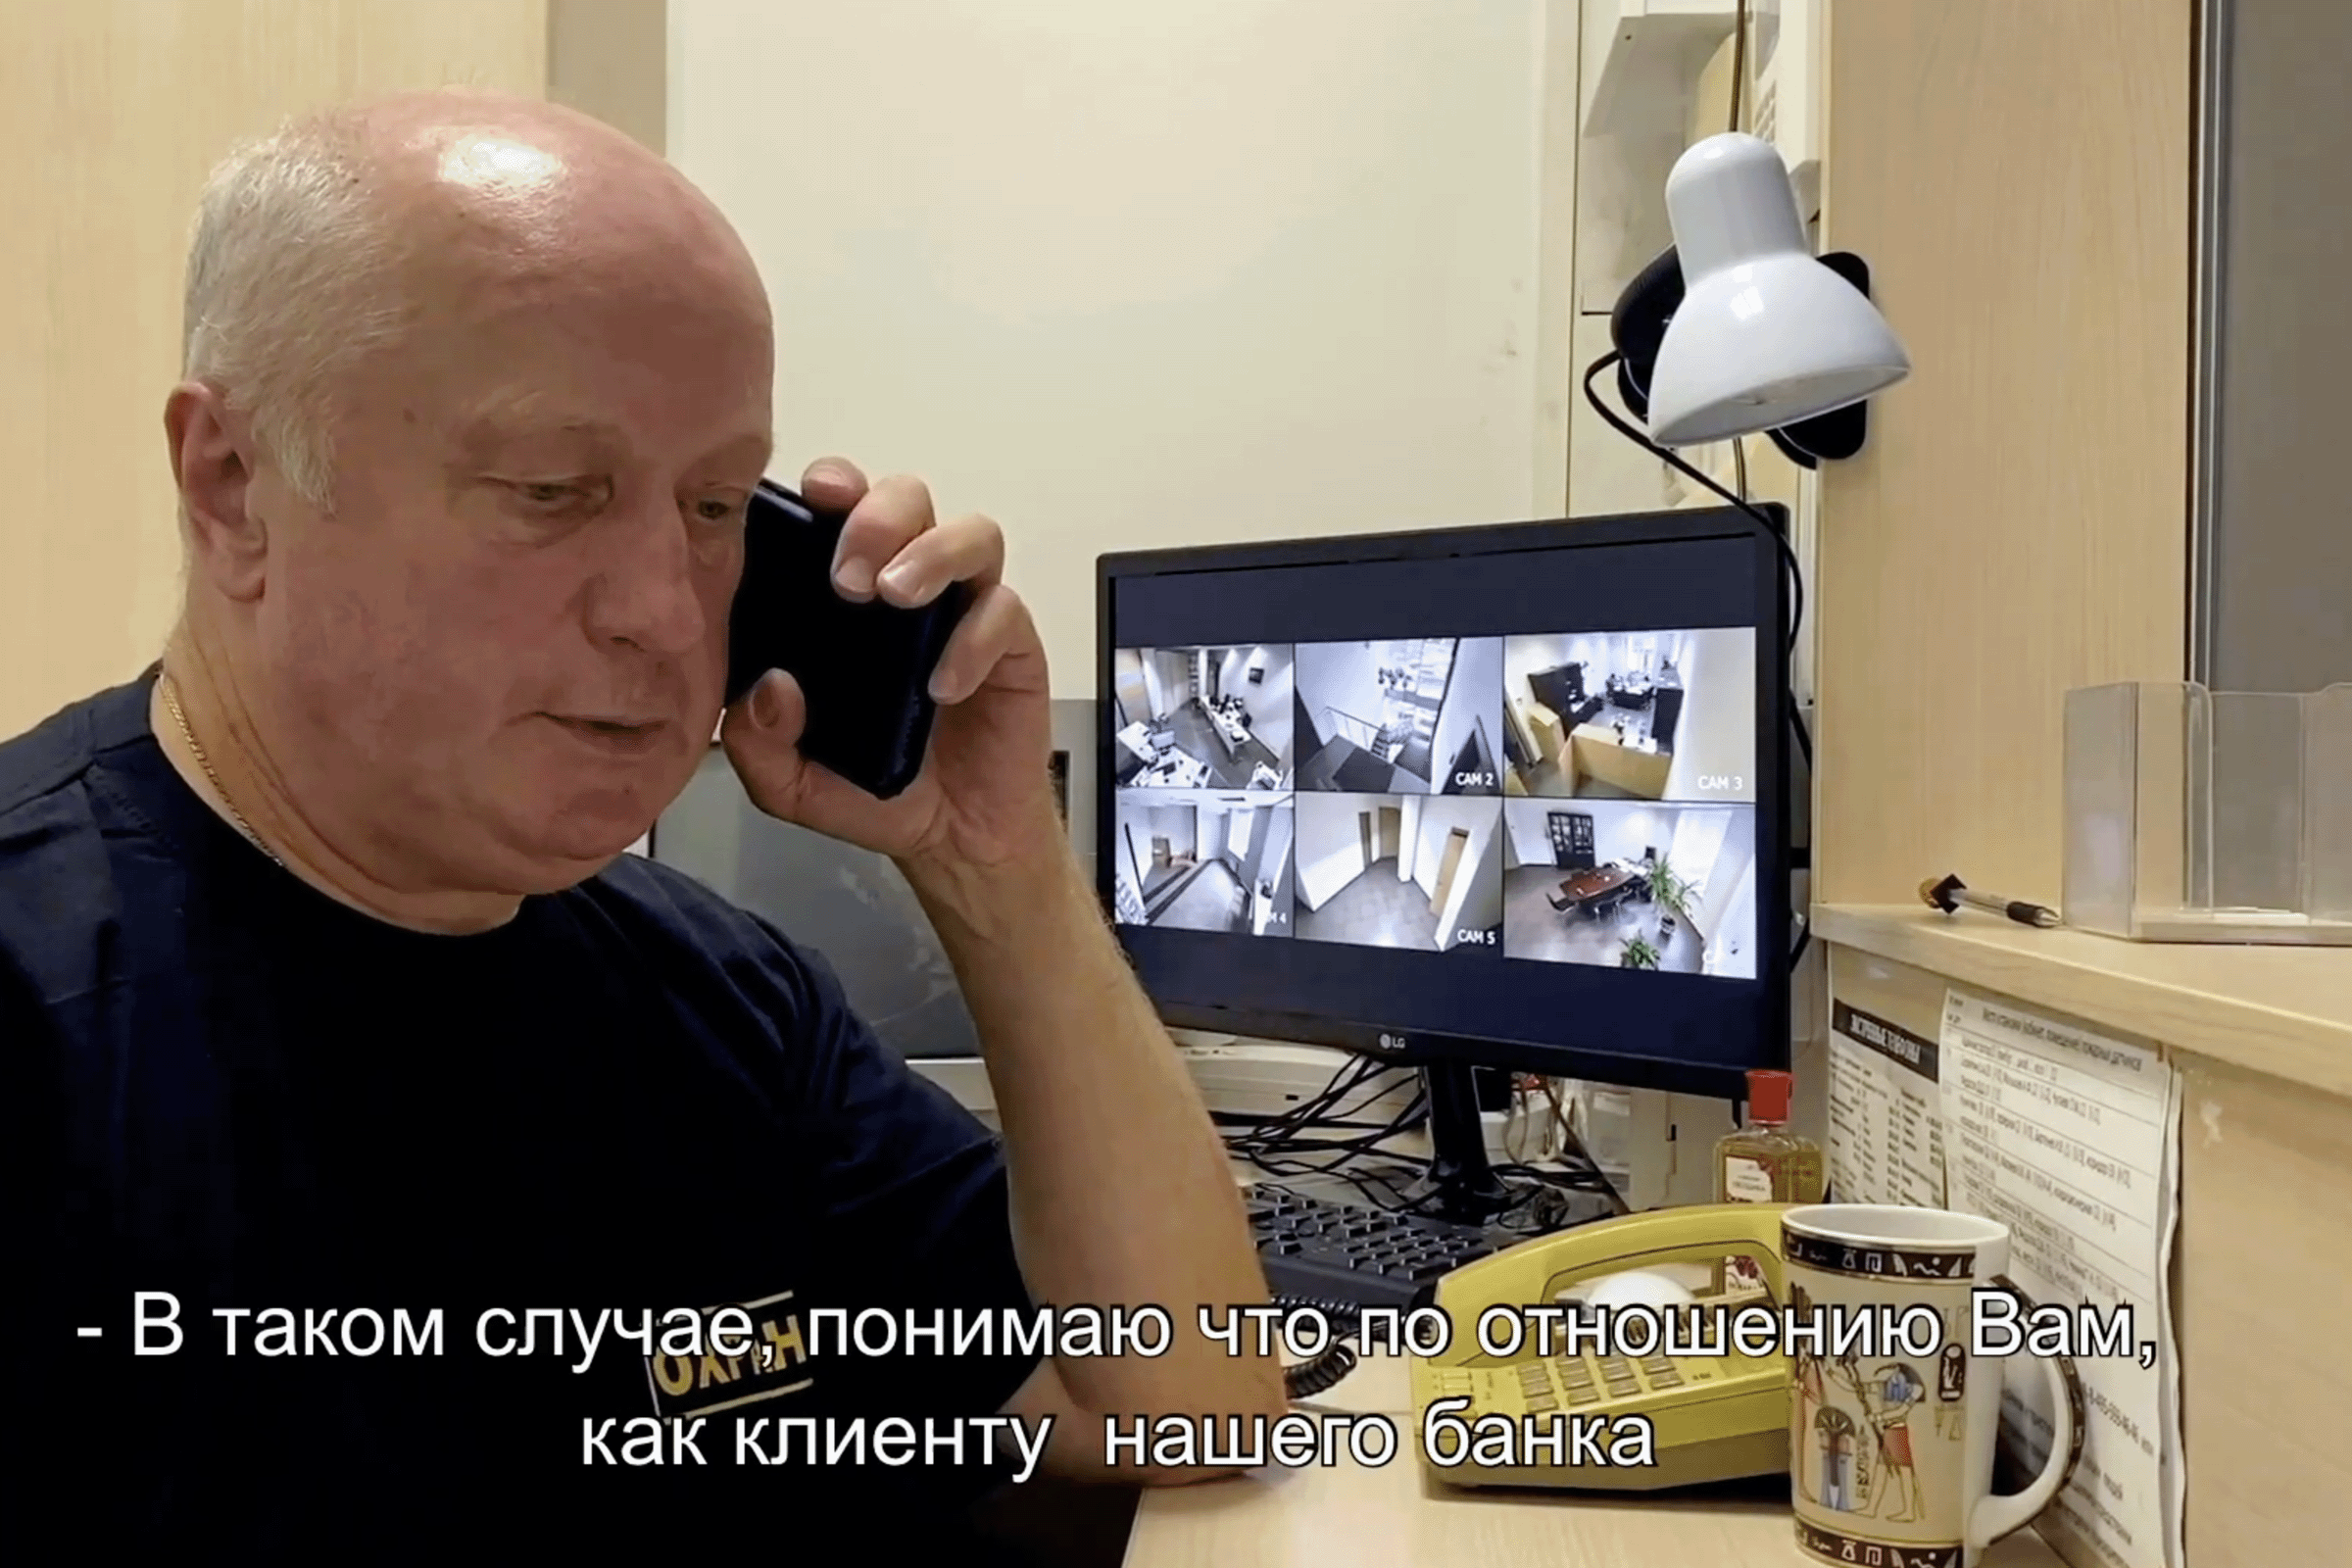 Анимация, мужчина среднего возраста с телефоном у монитора, посреди комнаты с телефоном и смотрит в камеру с биркой на груди с номером 2